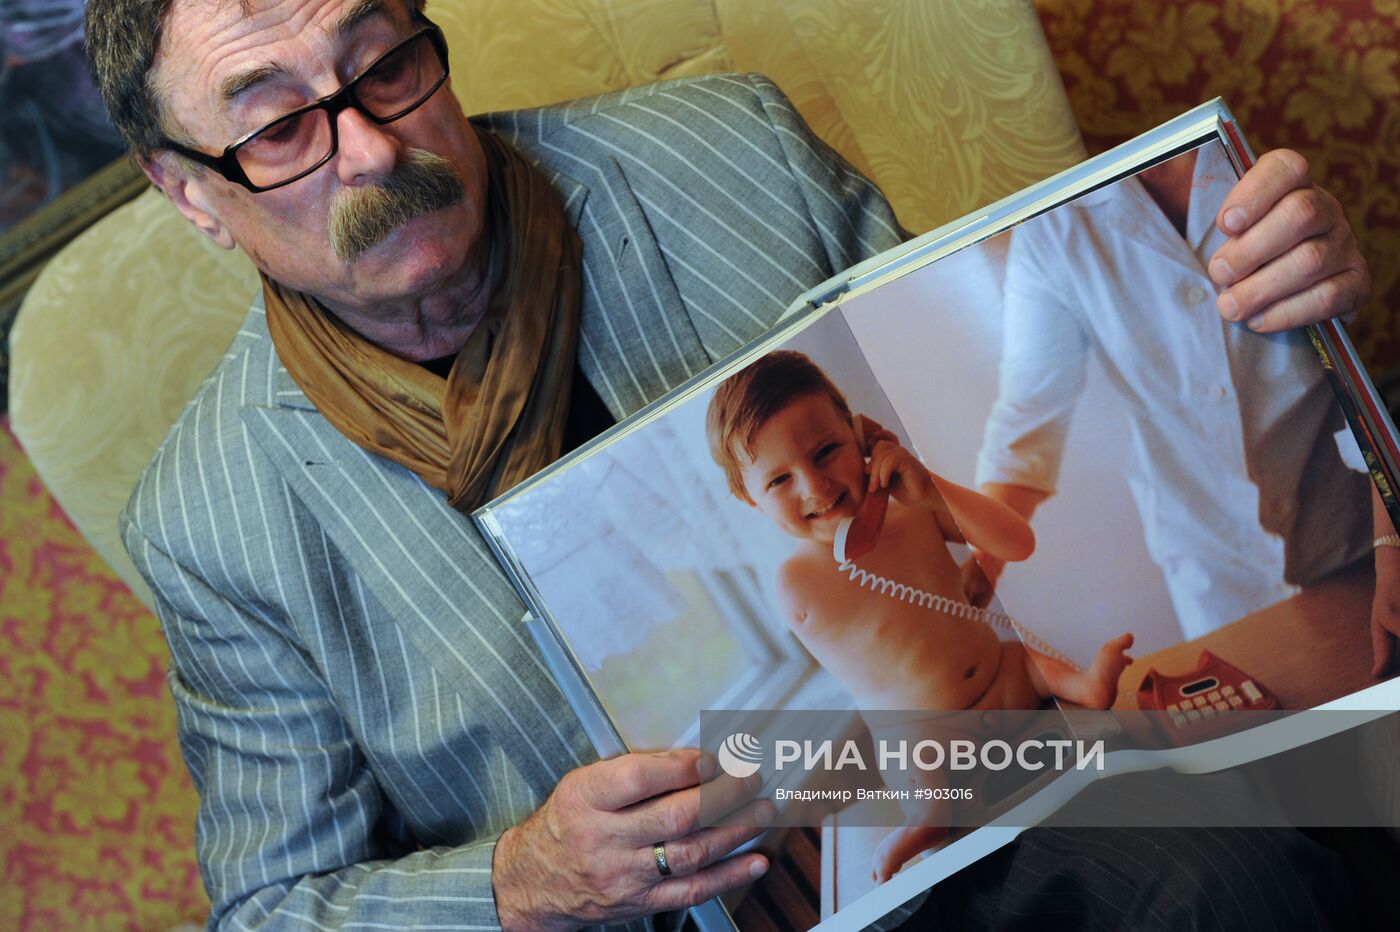 Интервью с бывшим фотографом АПН-РИА Новости Игорем Костиным